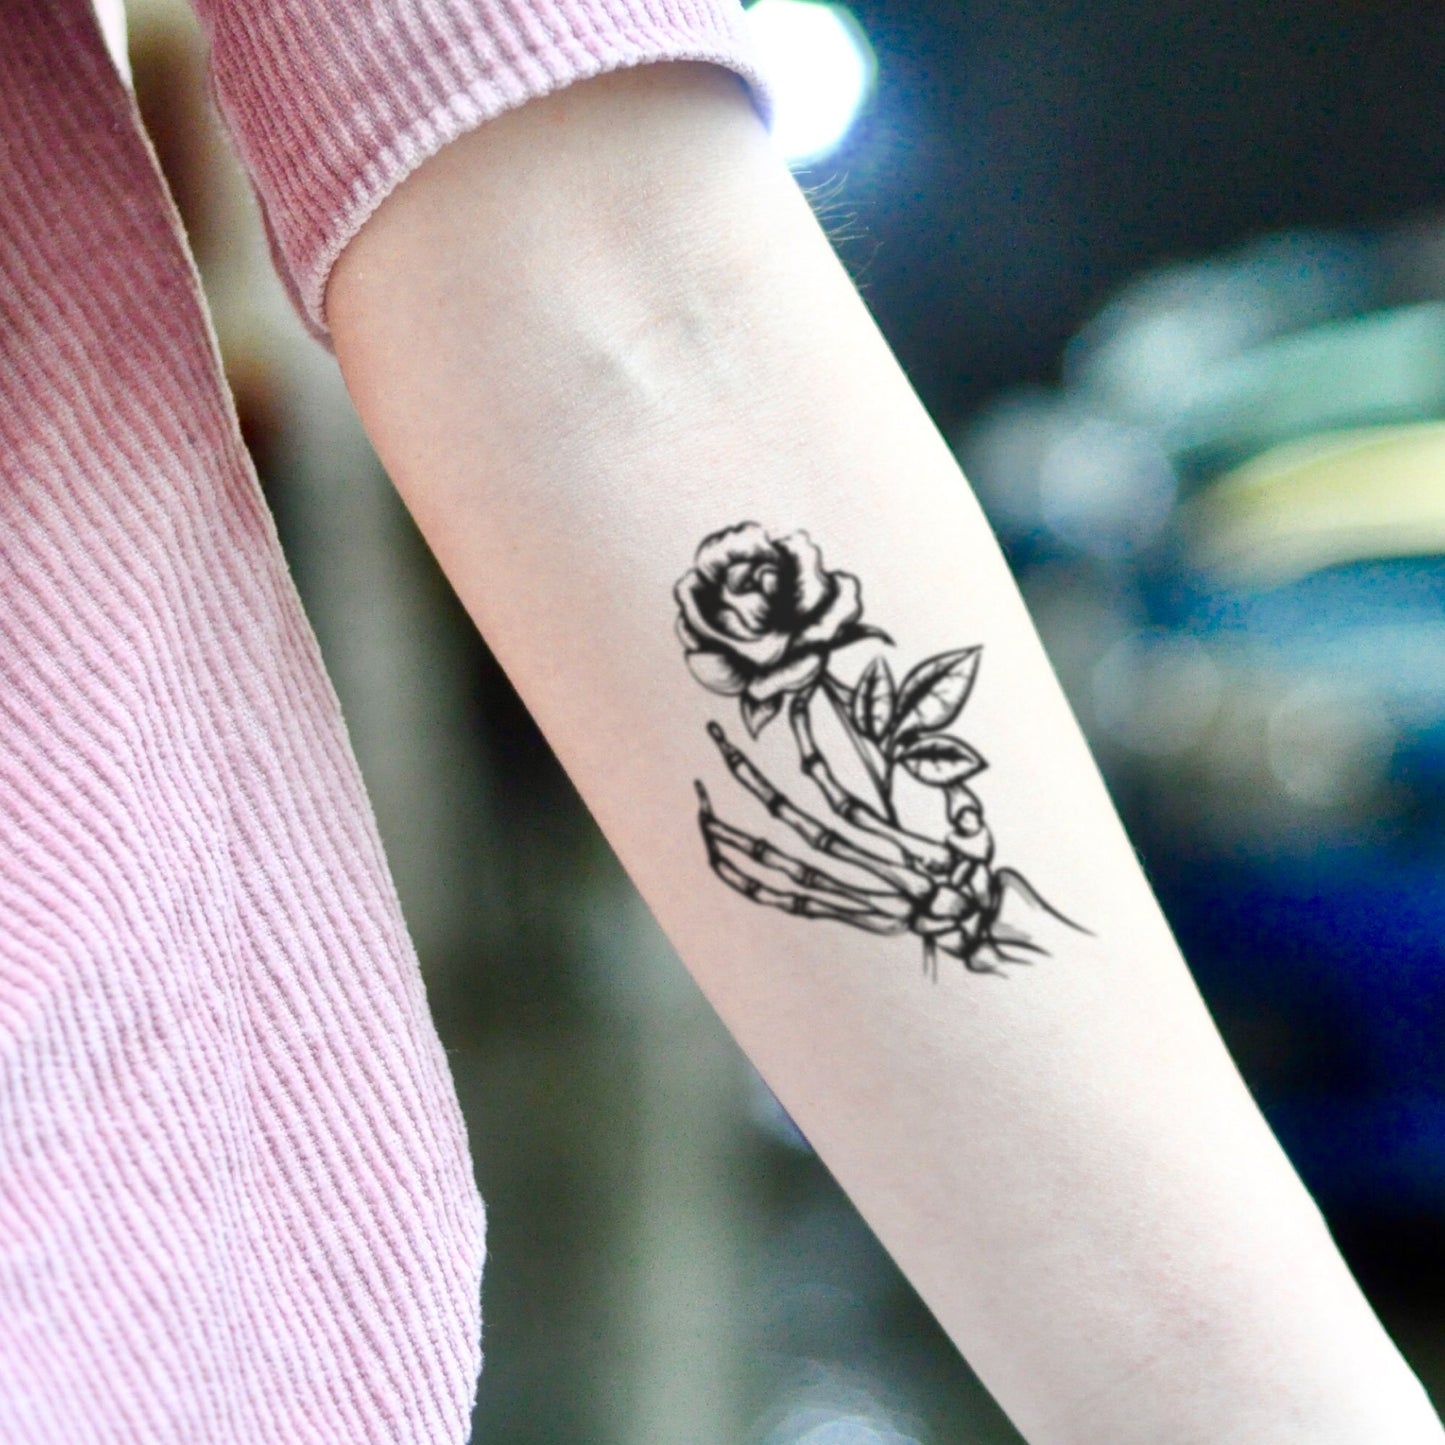 fake small skeleton flower hand holding flower temporary tattoo sticker design idea on inner arm